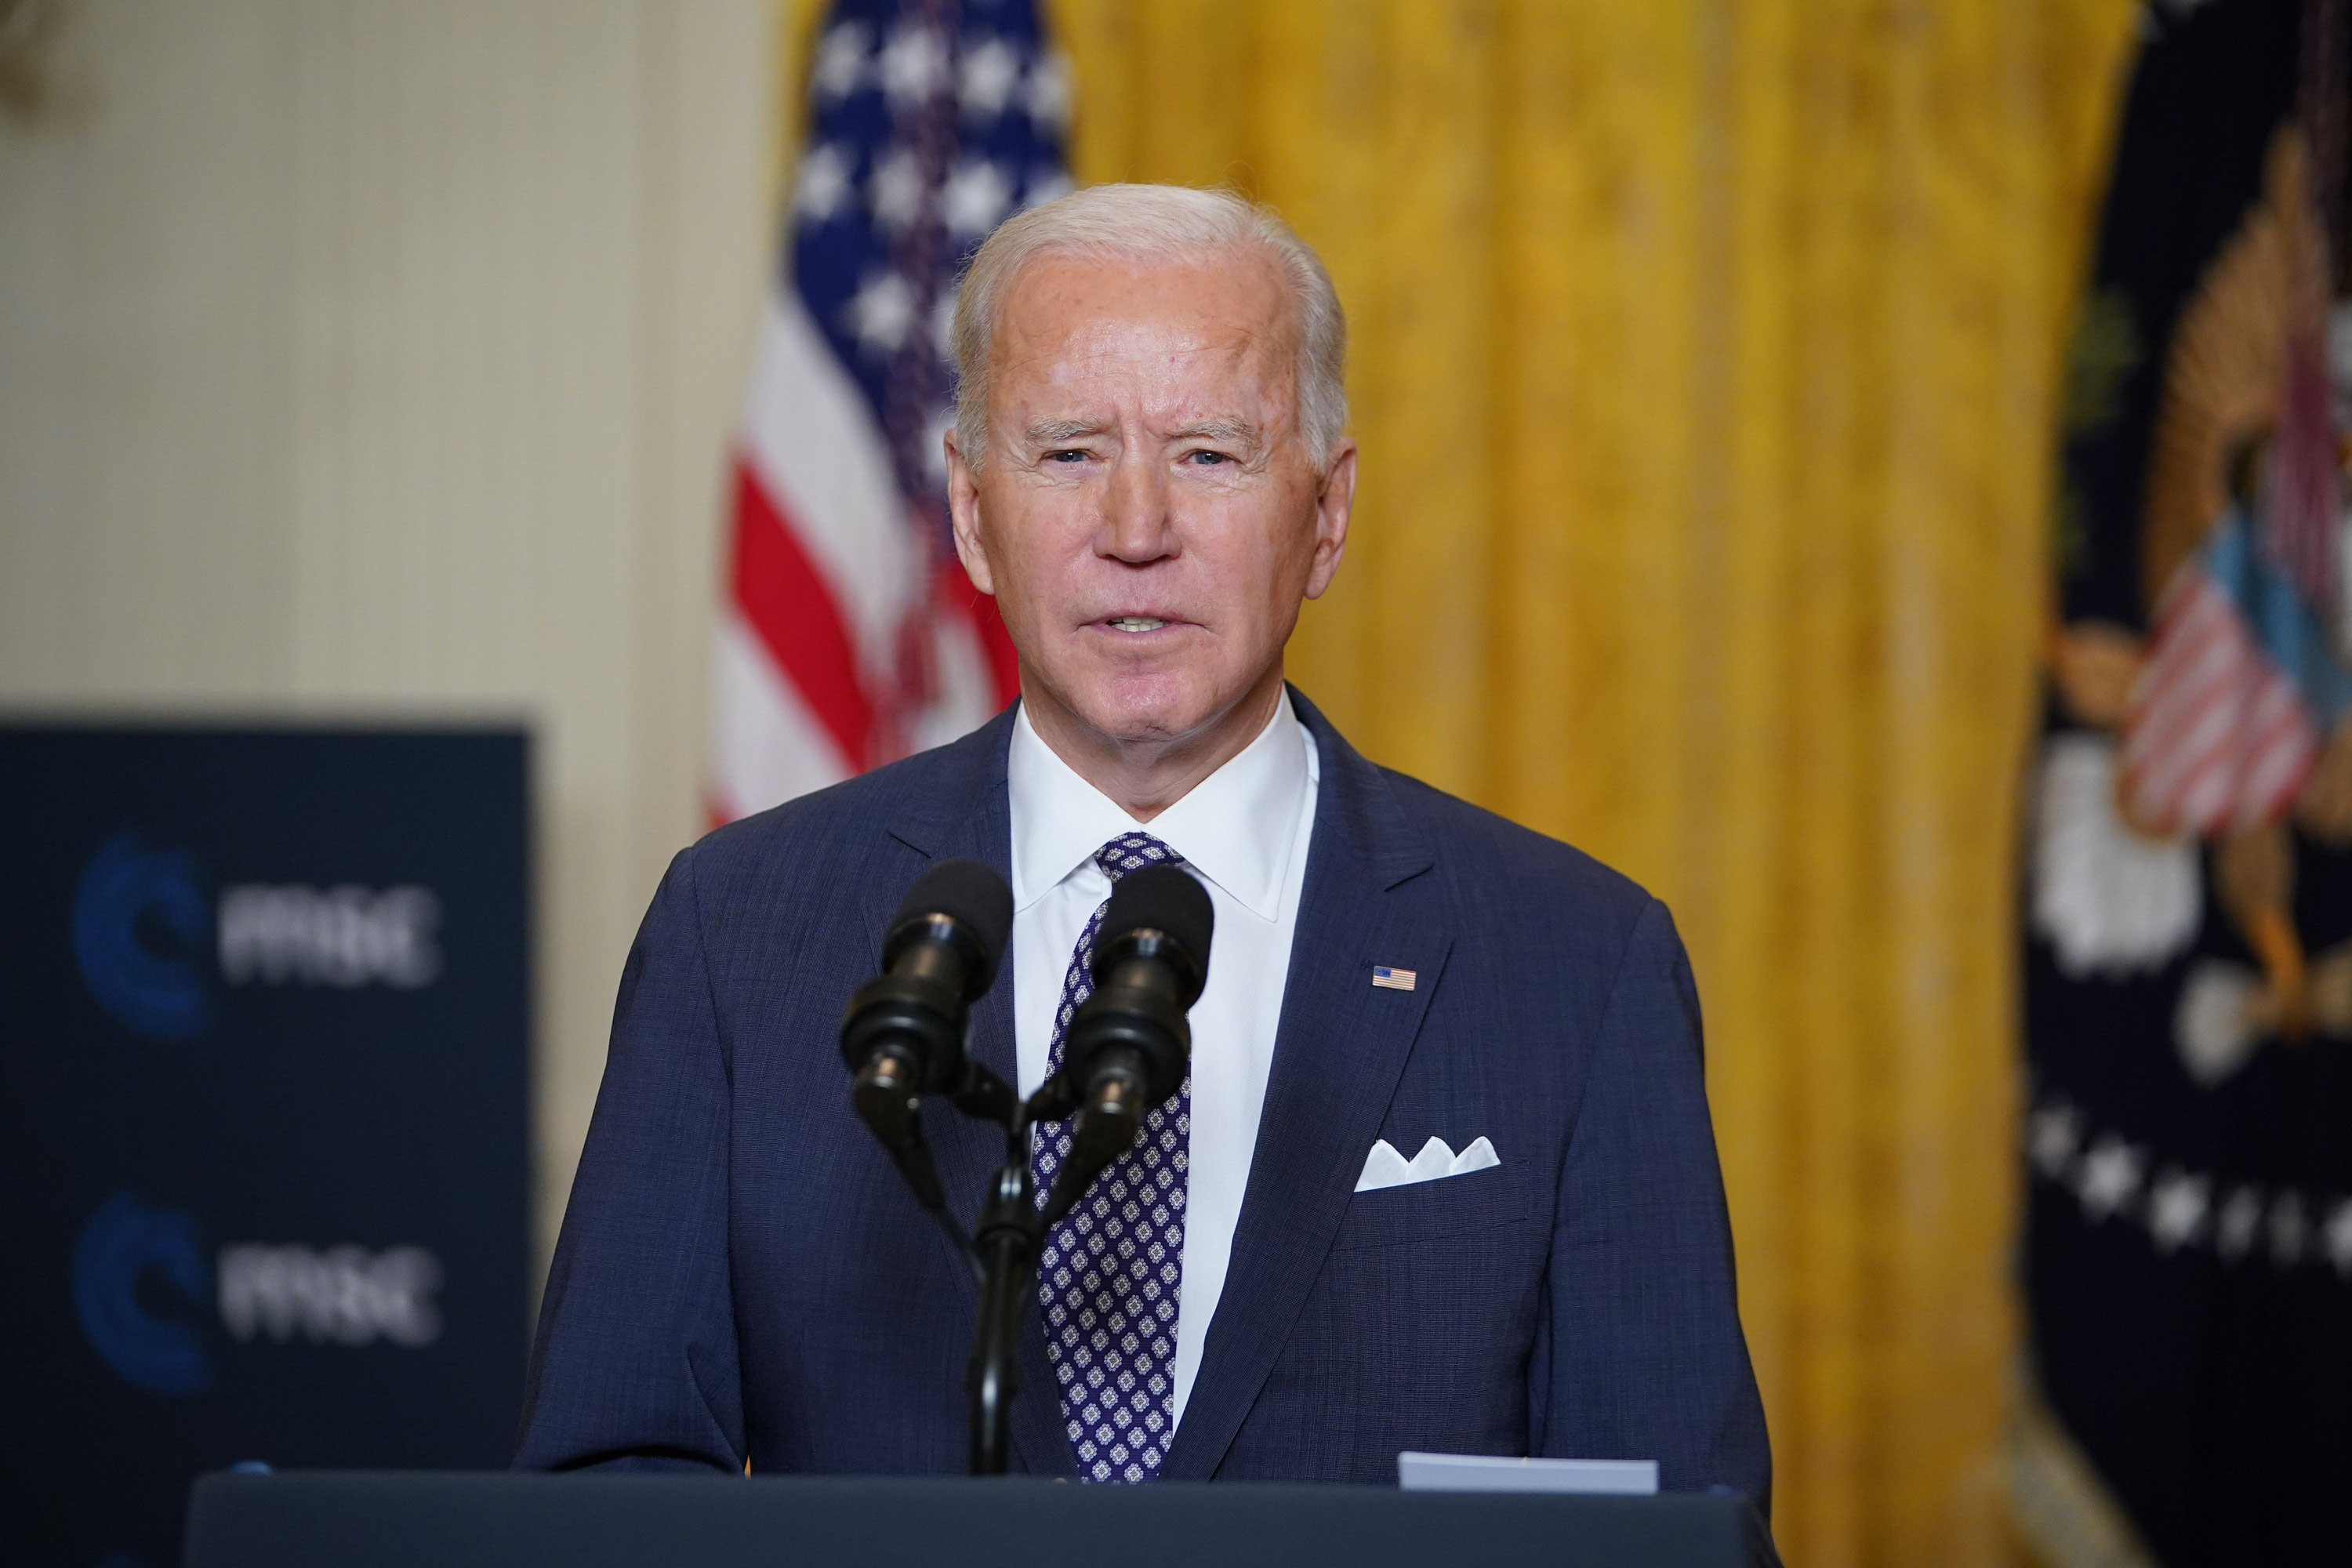 President Joe Biden speaks from the East Room of the White House in Washington, DC, on February 19.